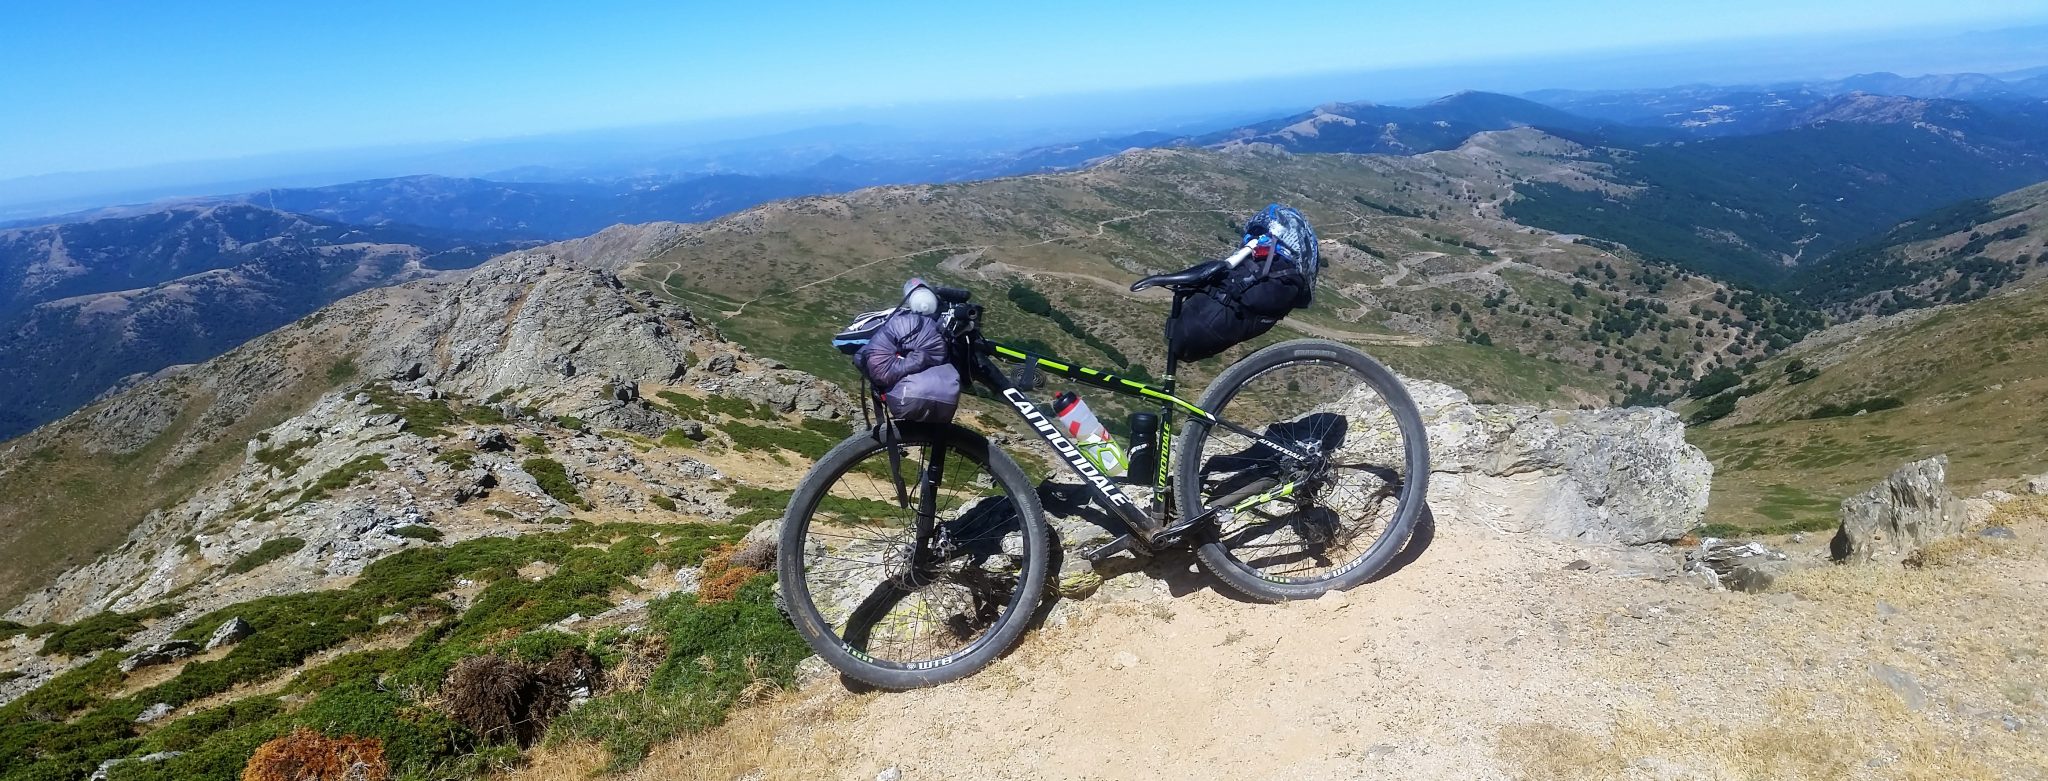 Transardinia In Bici nel cuore della Sardegna Parte 2